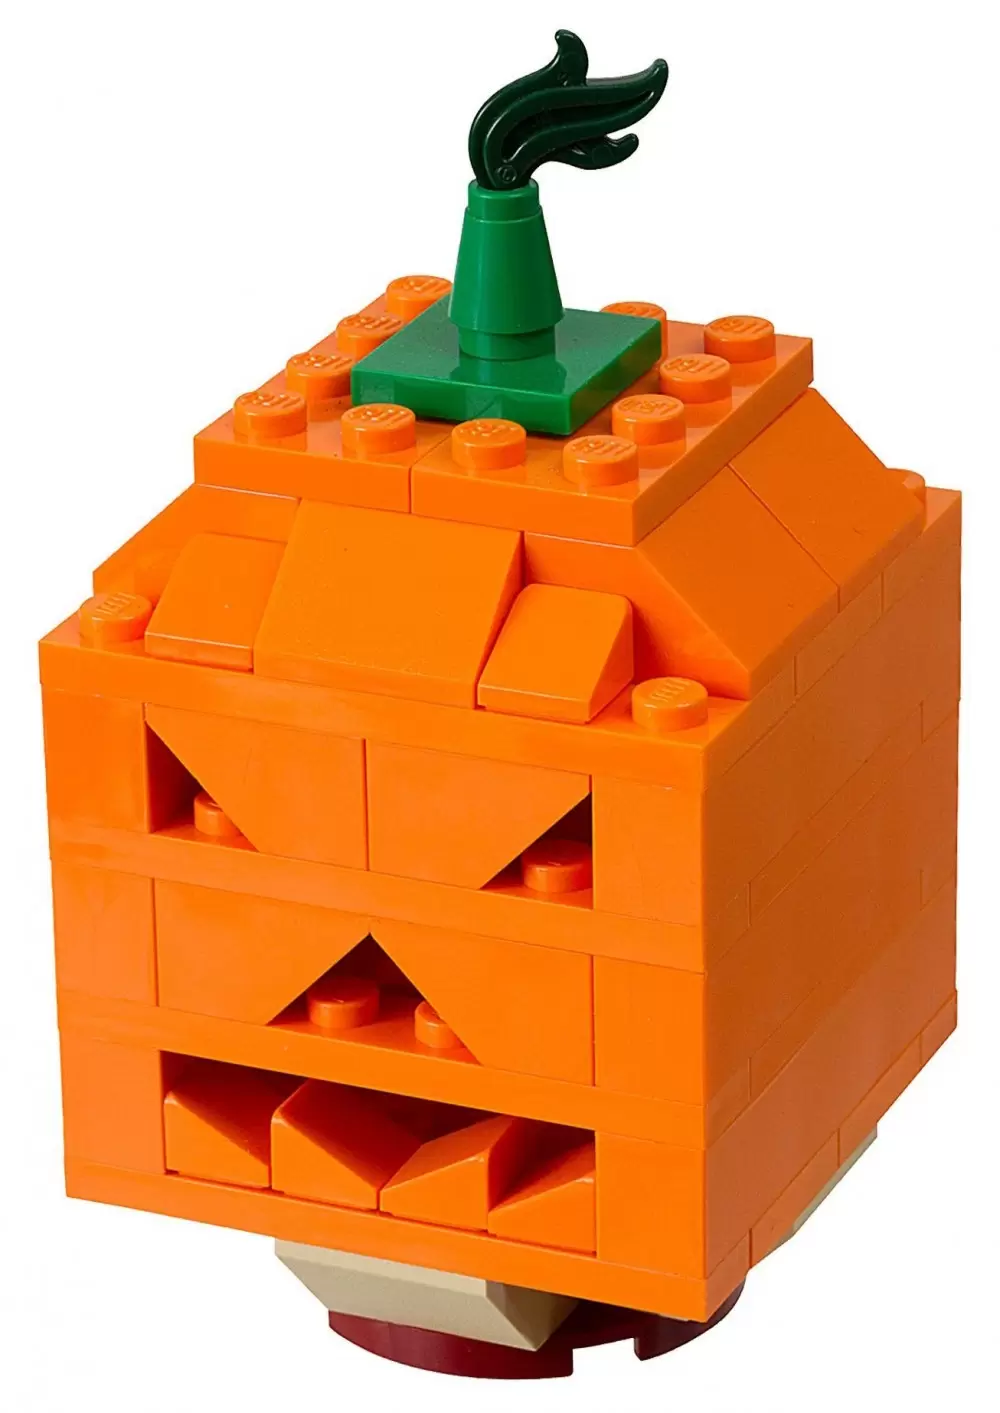 LEGO Saisonnier - Halloween Pumpkin